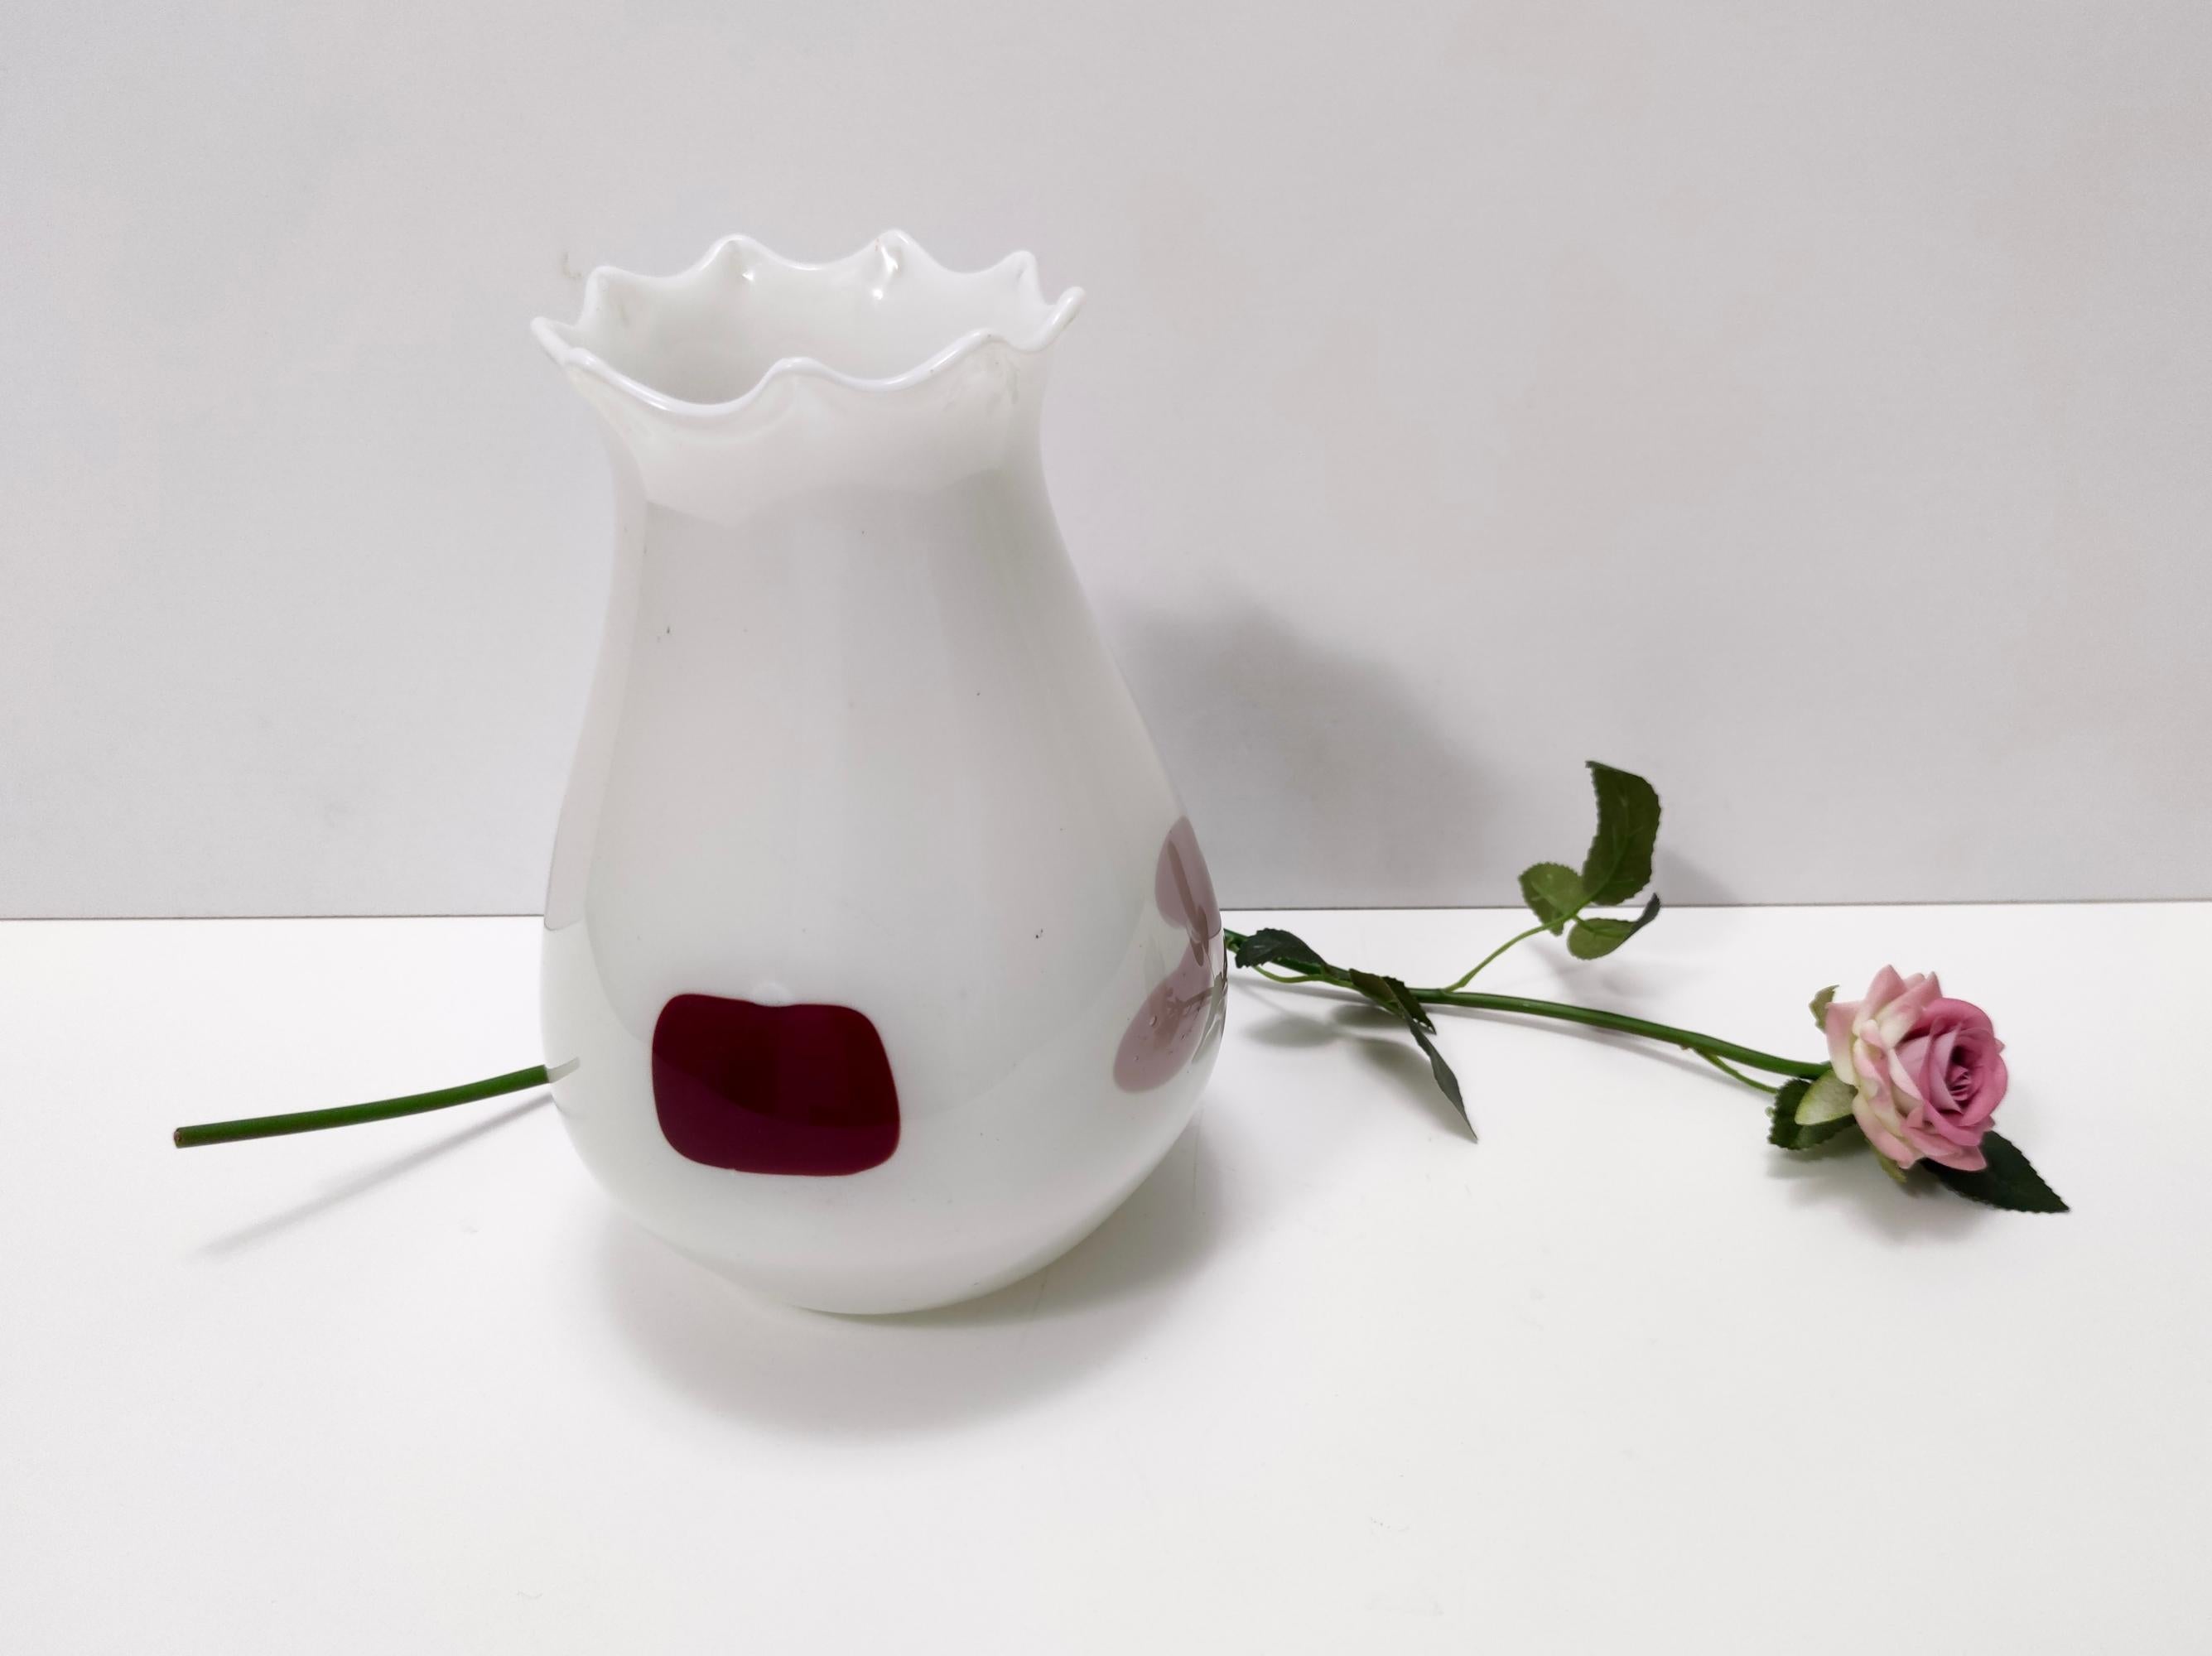 Fabriqué en Italie, années 1950. 
Ce vase blanc en verre de Murano l'attimo présente des inserts en verre coloré de couleurs de cartes à jouer (carreau, trèfle, cœur et pique).
Il s'agit d'une pièce vintage, elle peut donc présenter de légères